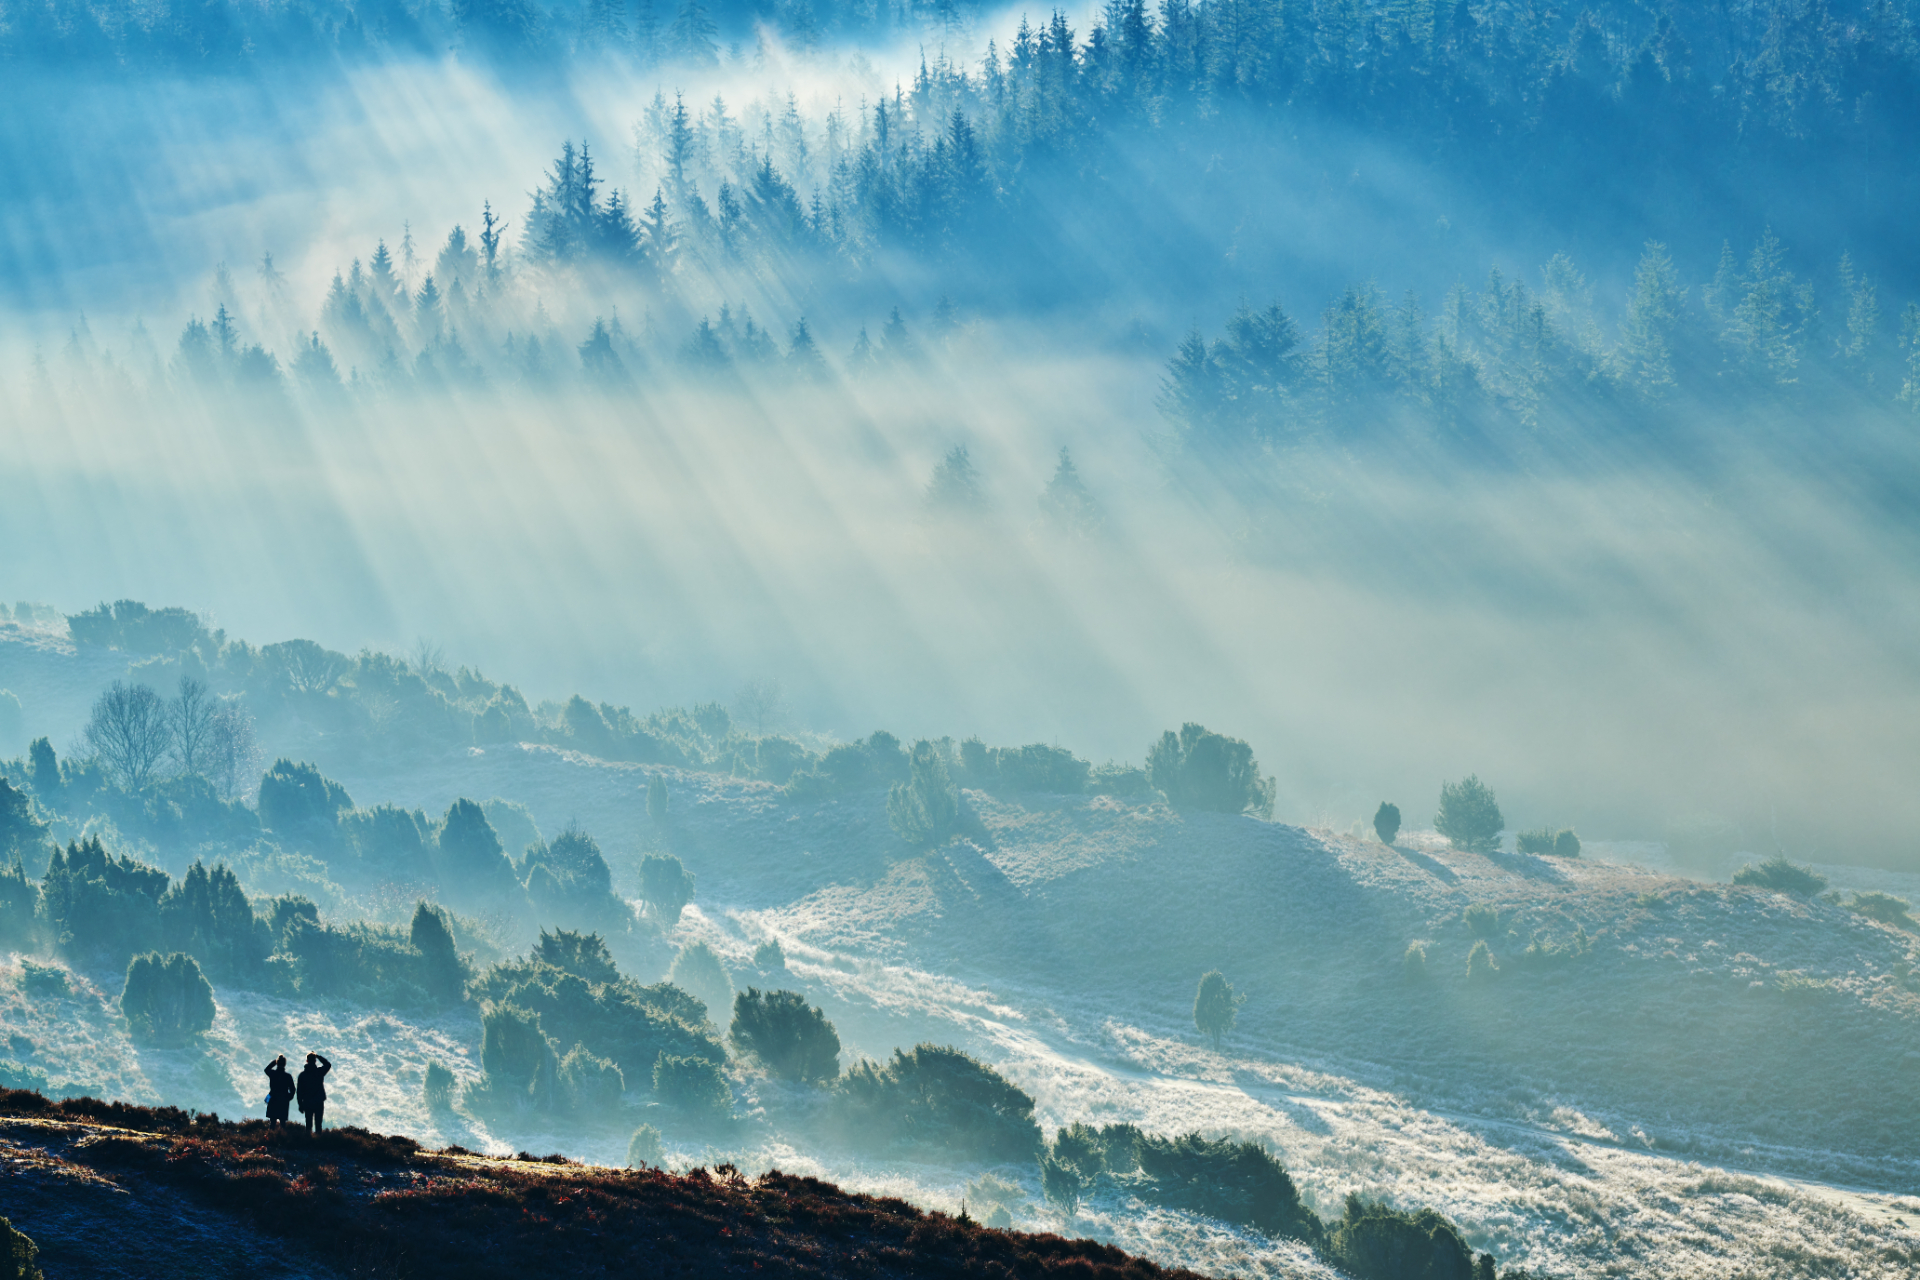 Rebild Bakkers natur i blå-hvide nuancer grundet tåge og sollys